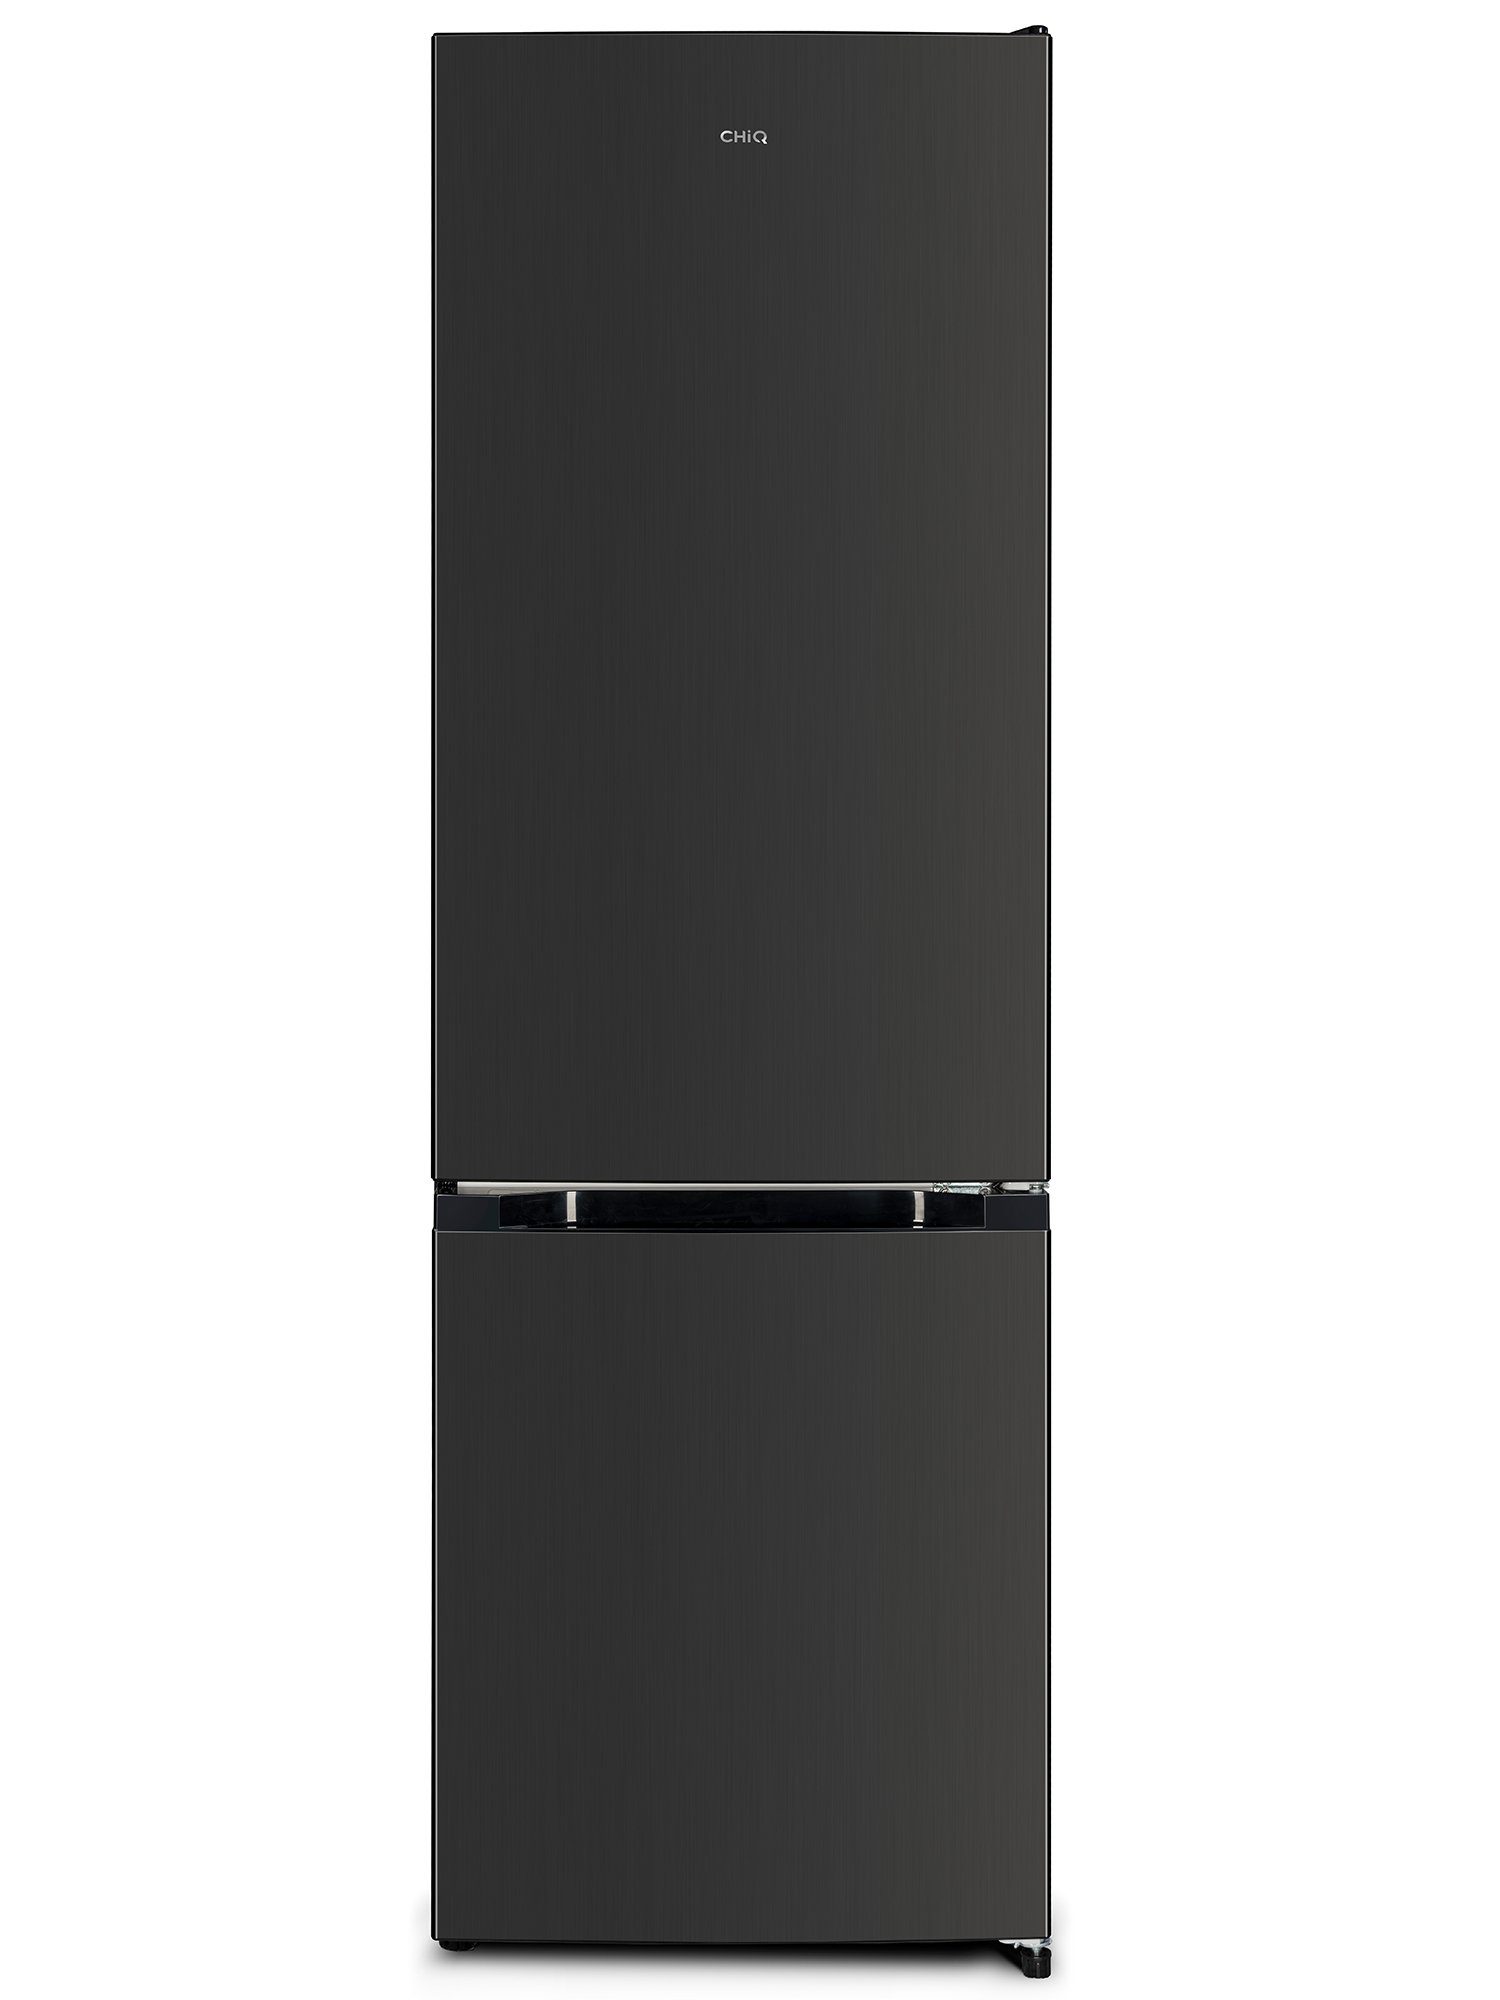 CHiQ Kühl-/Gefrierkombination FBM260L, 176 cm hoch, 54 cm breit, 262L kühlschrank,12 Jahre Garantie auf den Kompressor